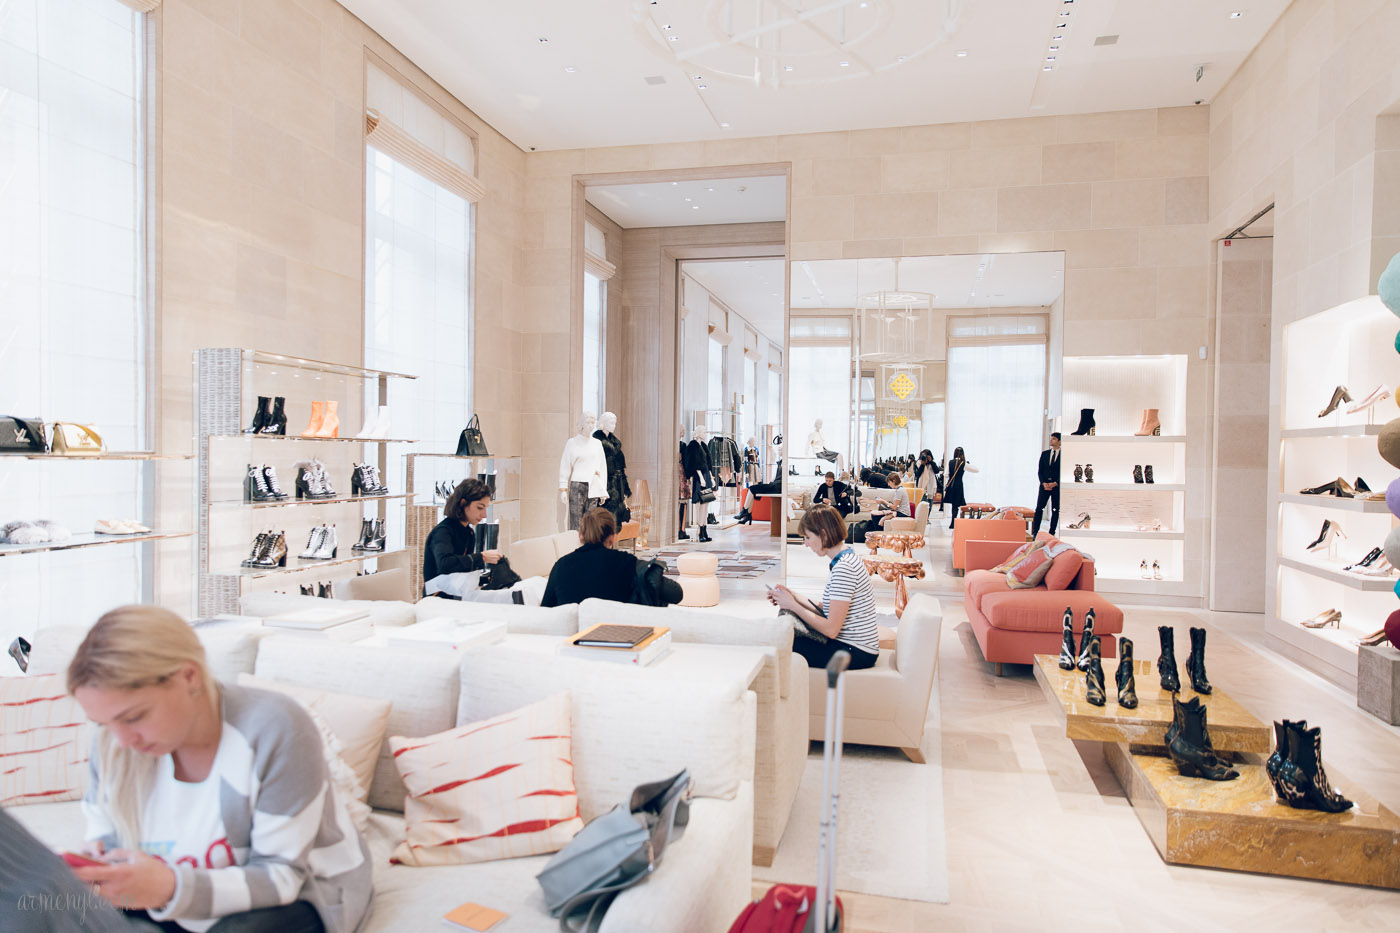 Louis Vuitton returns home: Inside the new Place Vendôme store